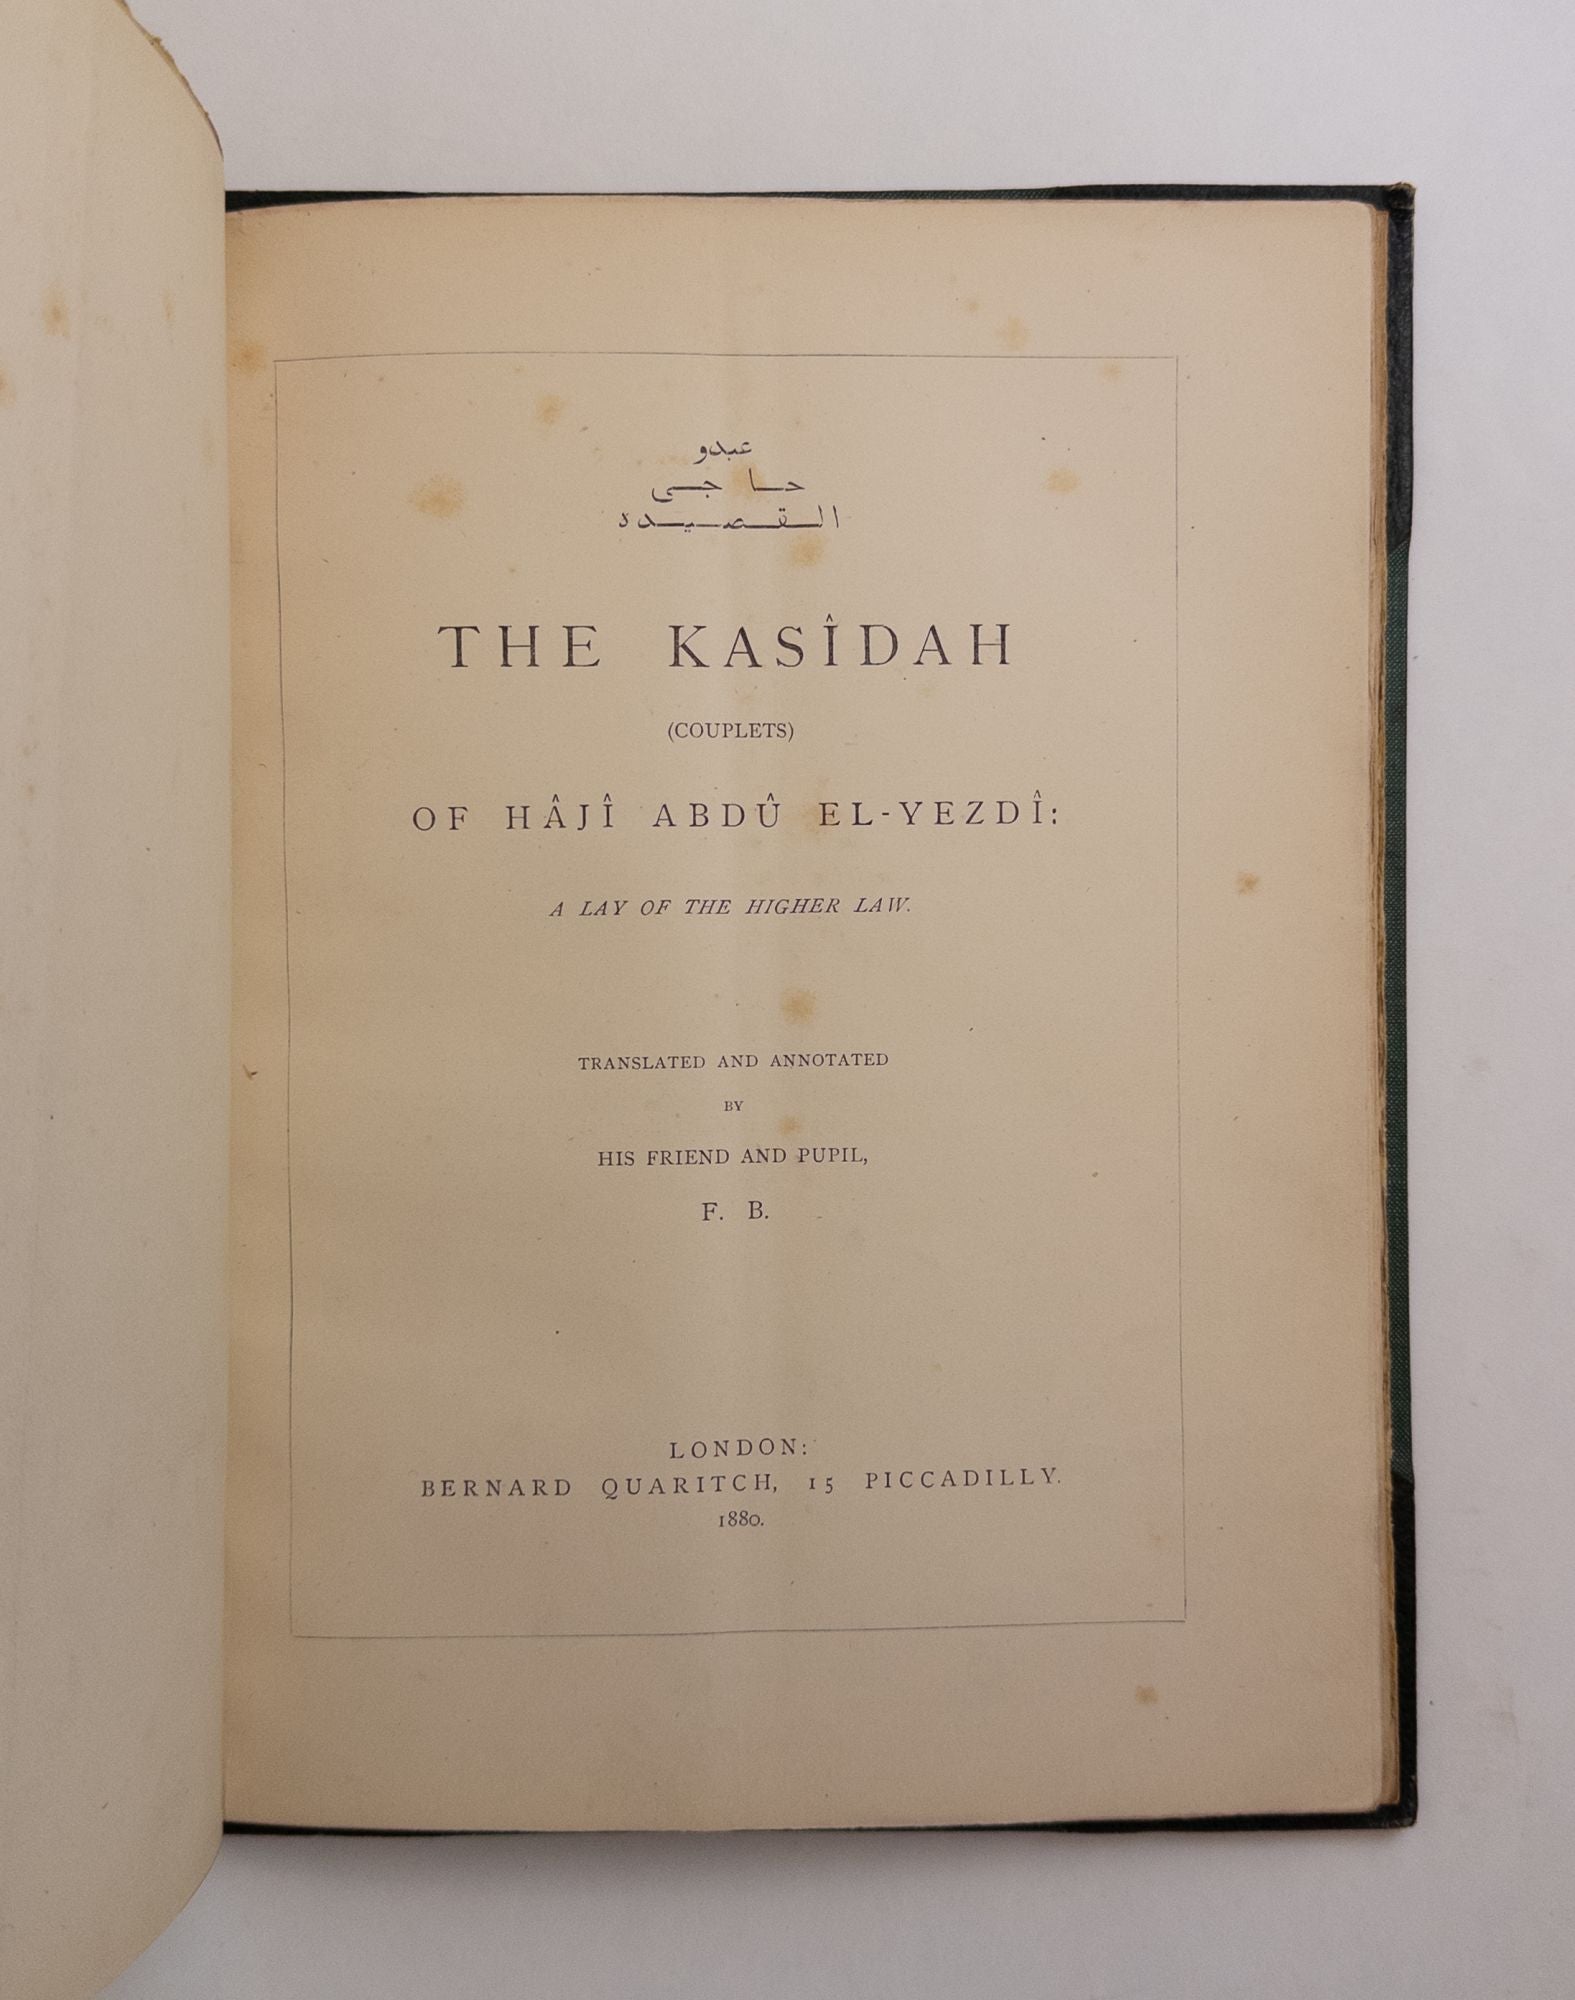 Product Image for THE KASIDAH OF HAJI ABDU EL-YEZDI